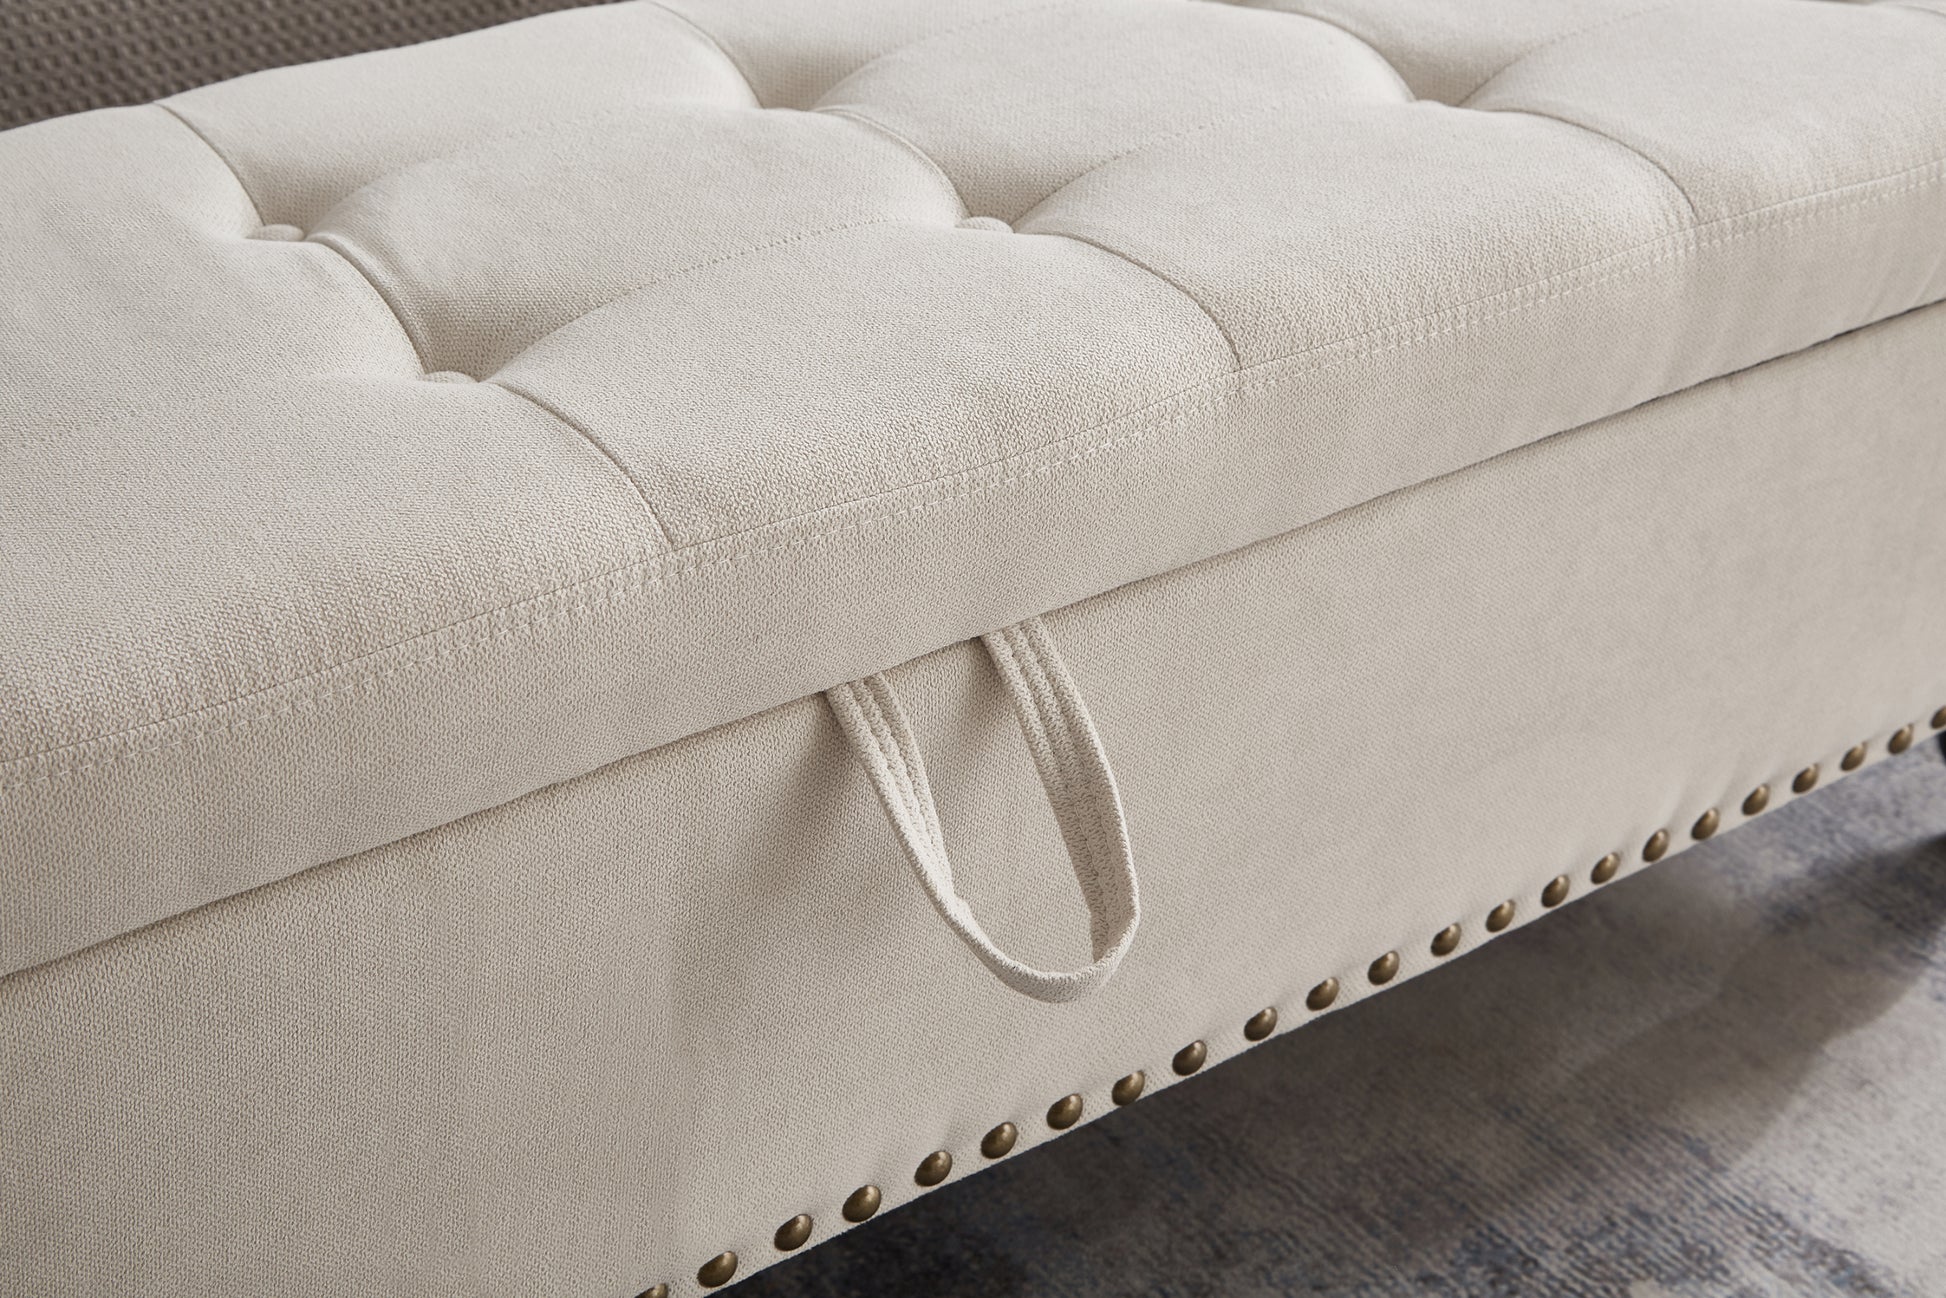 59" Bed Bench Ottoman with Storage Beige Fabric beige-foam-cotton linen